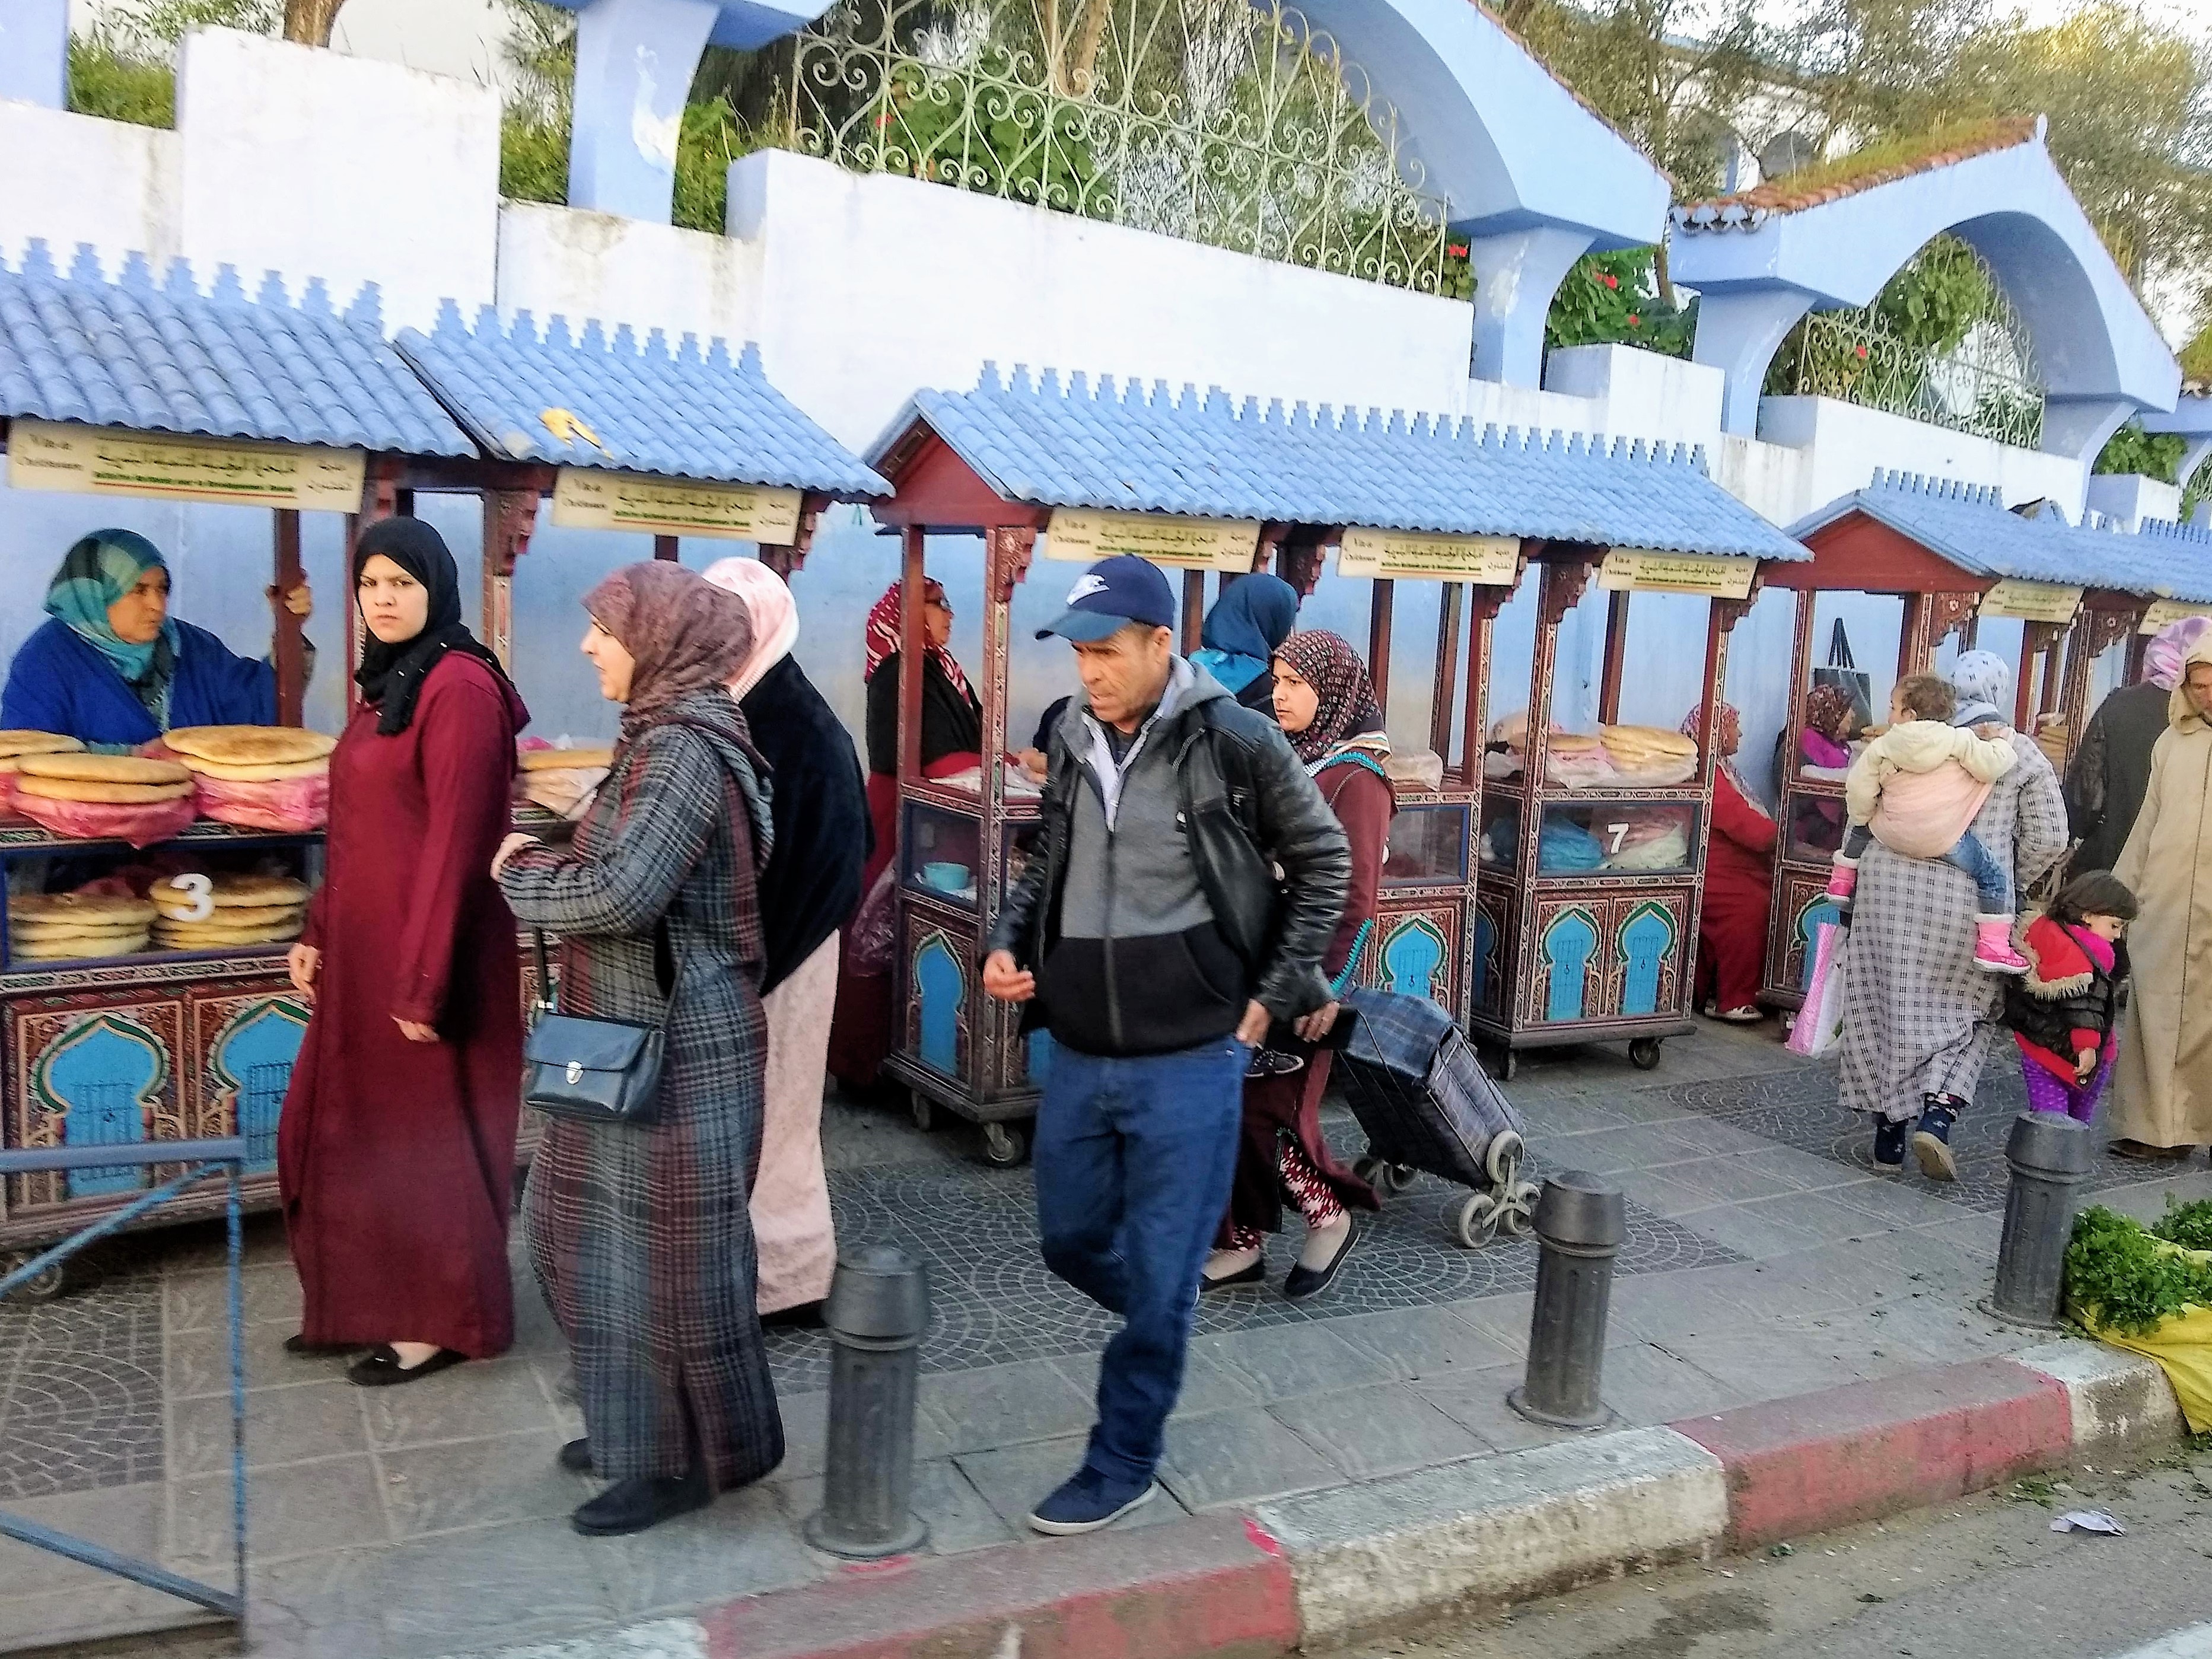 Tetouan, Morocco UNESCO medina scene with vendors and women